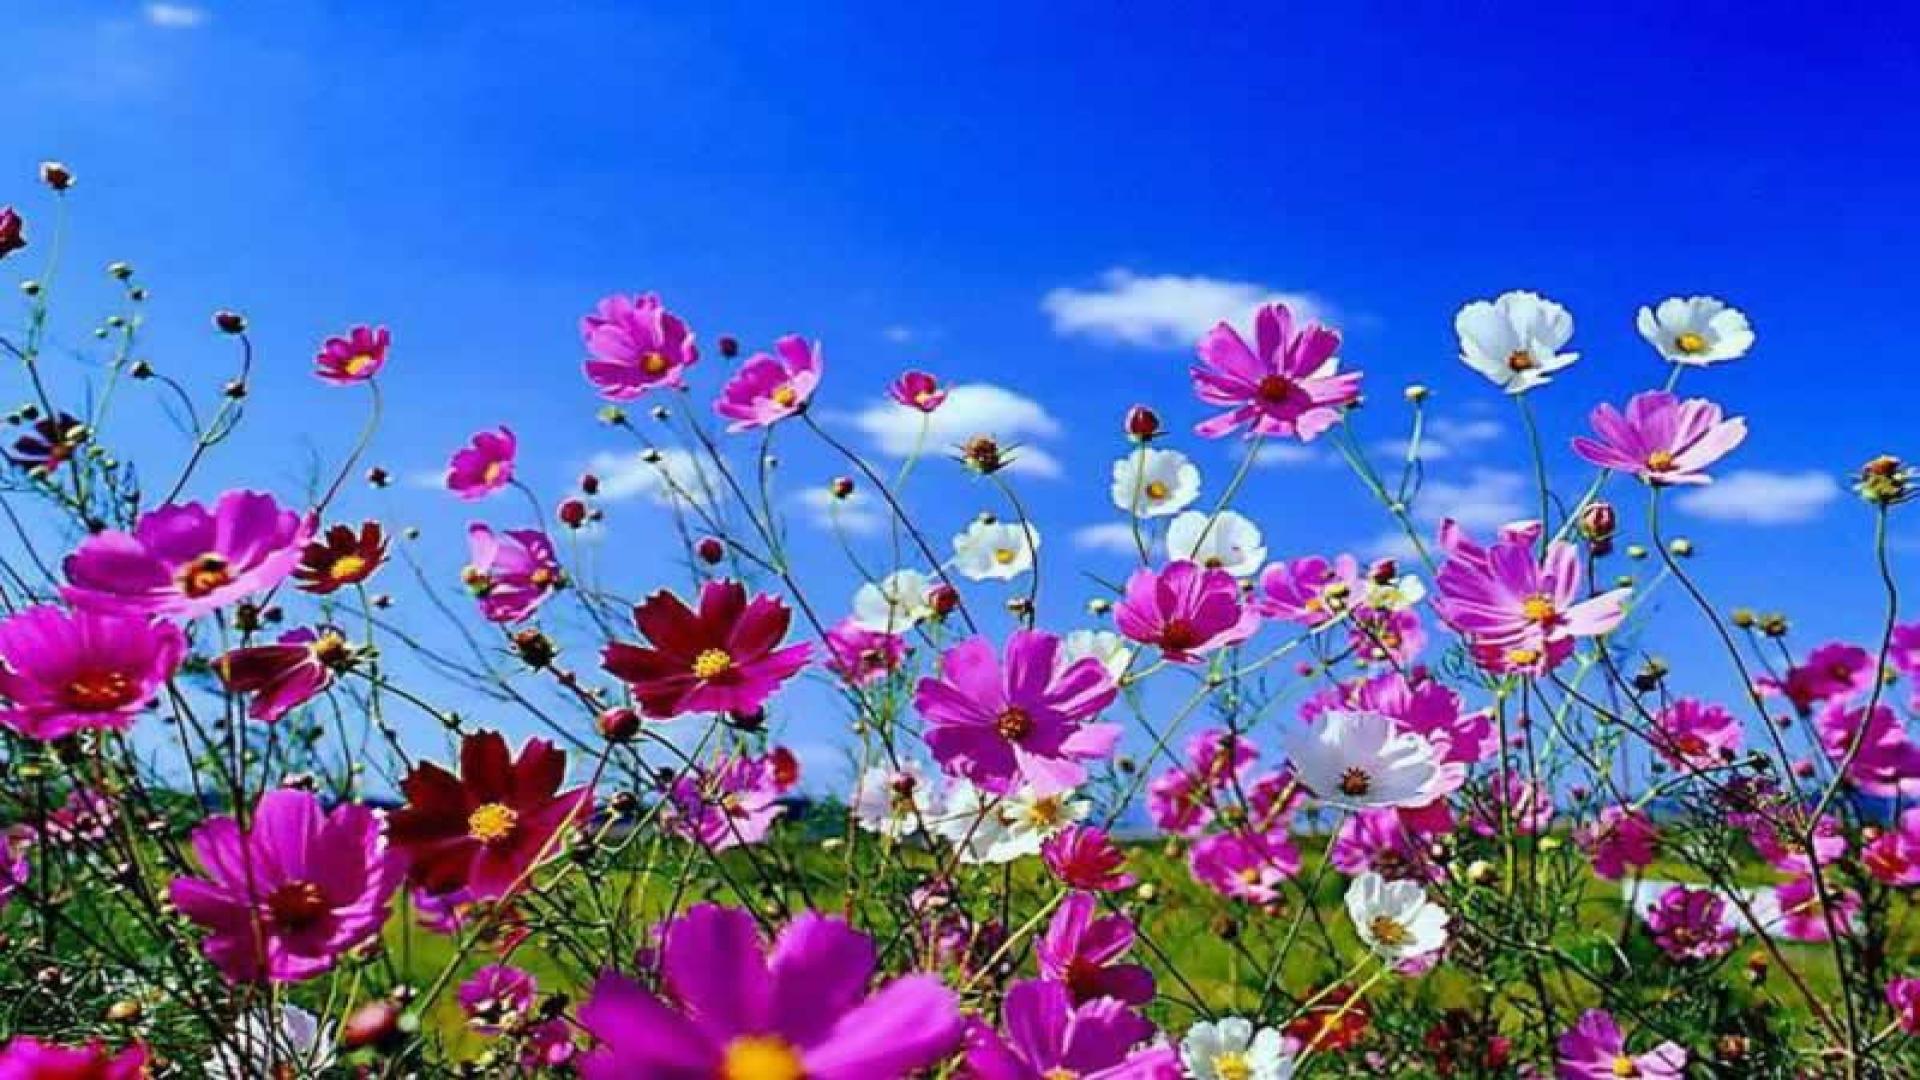 spring_nature_flowers_butterflies_girl_3564_1920x1080.jpg